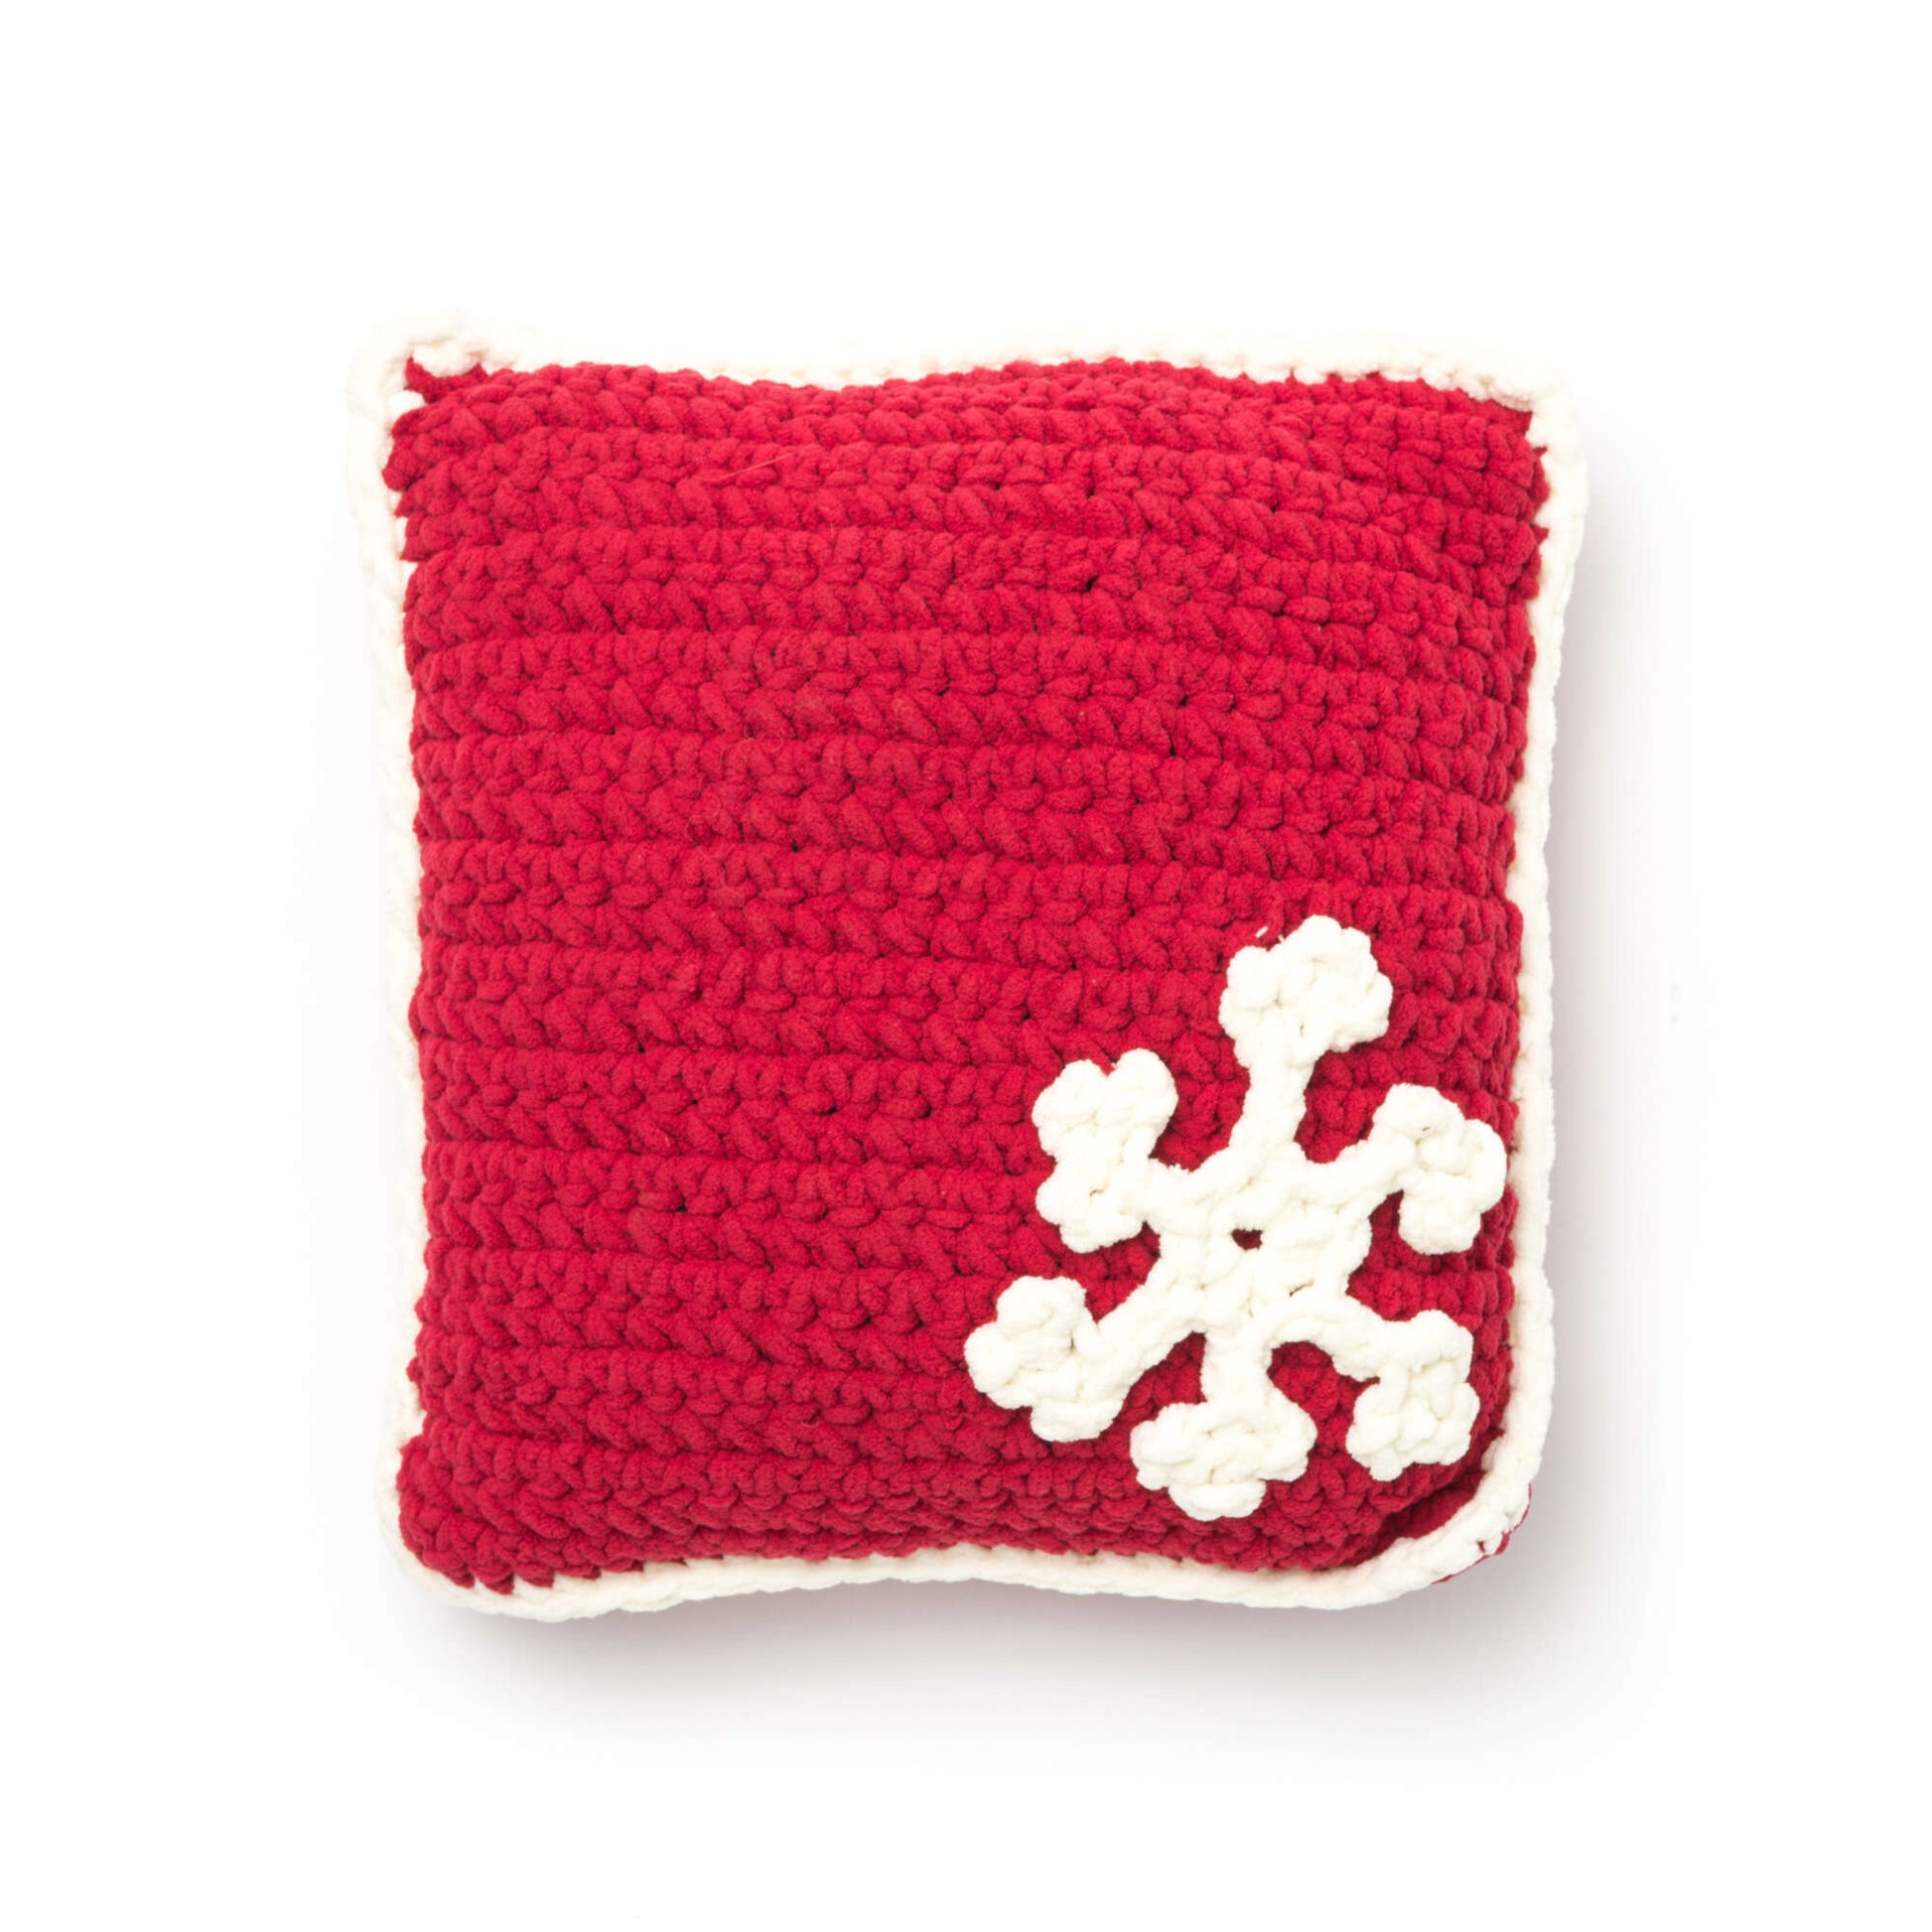 Free Bernat Snowflake Pillow Crochet Pattern